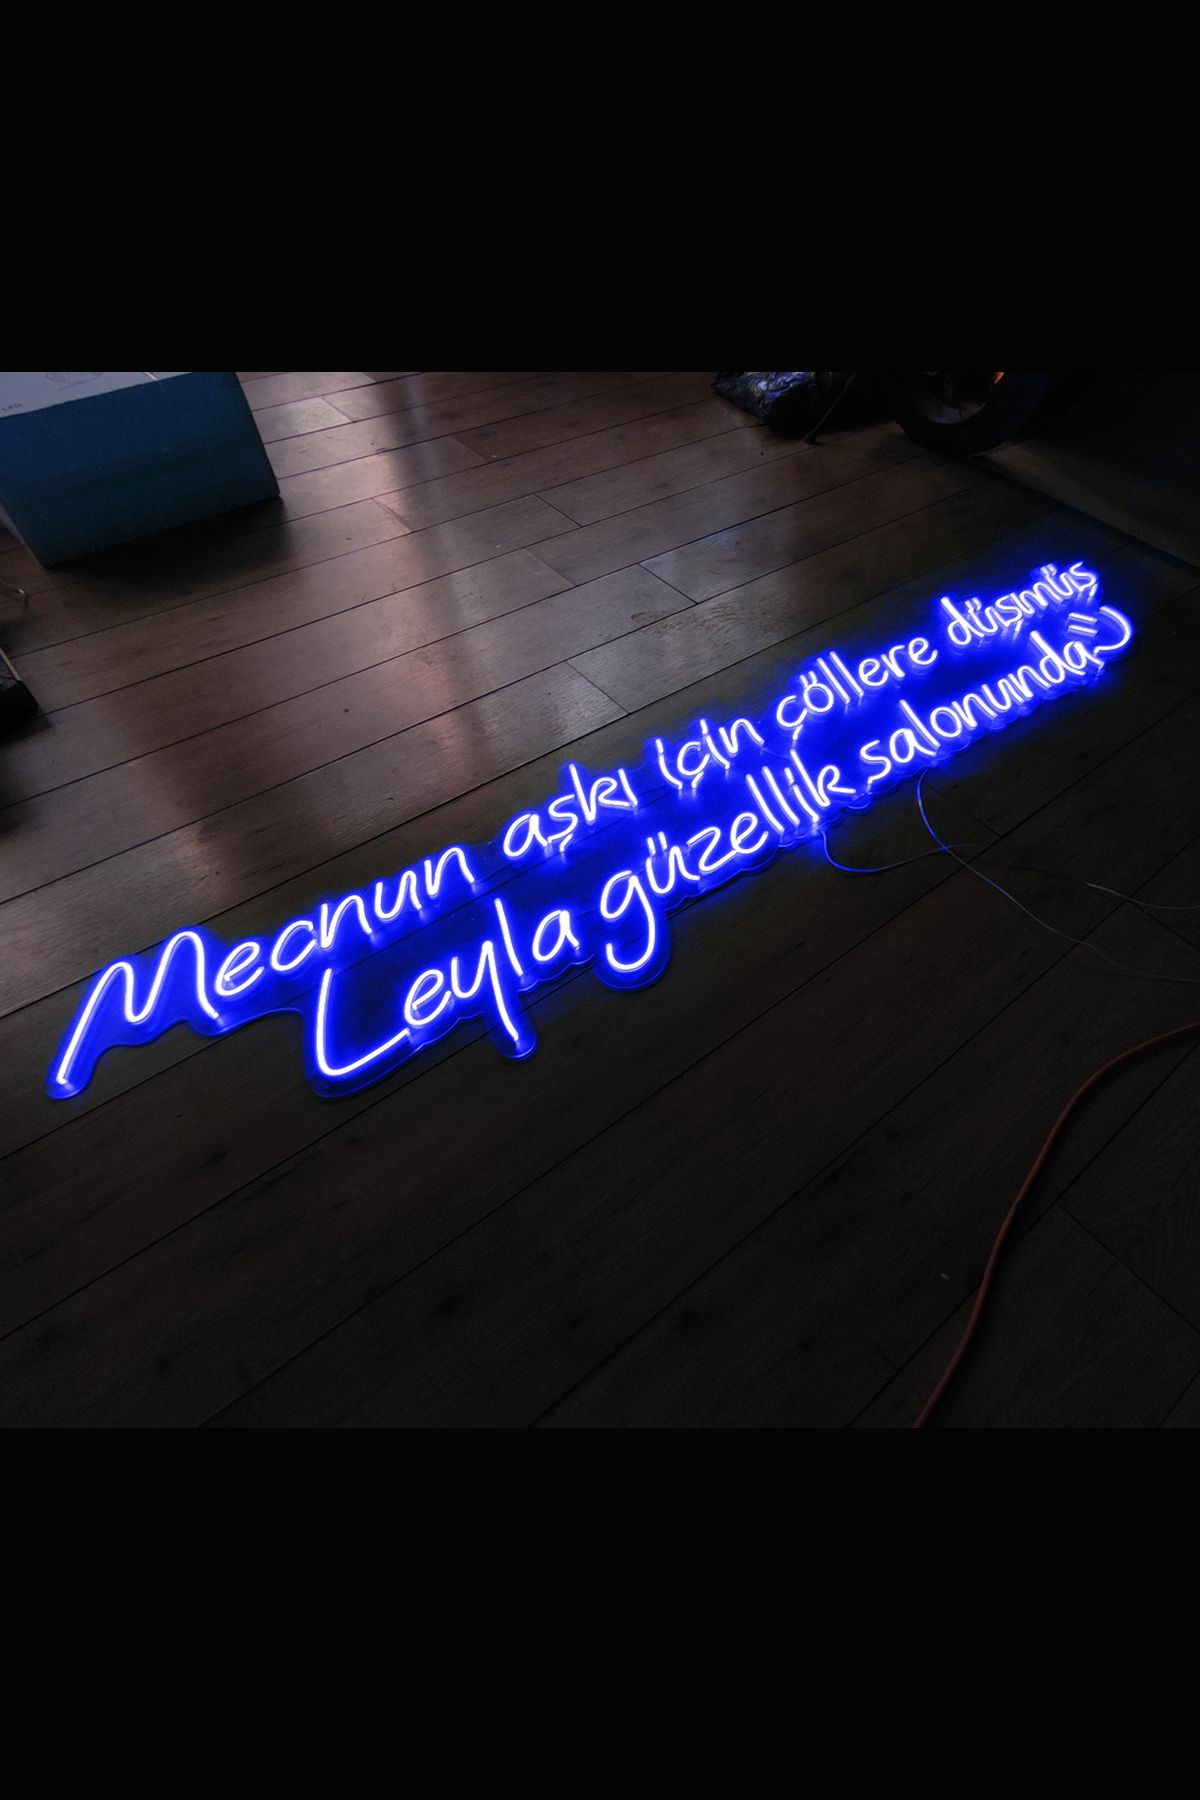 Işıklı Mecnun Aşkı İçin Çöllere Düşmüş Leyla: Neon LED Tabela Duvar Dekorasyon Ürünü 